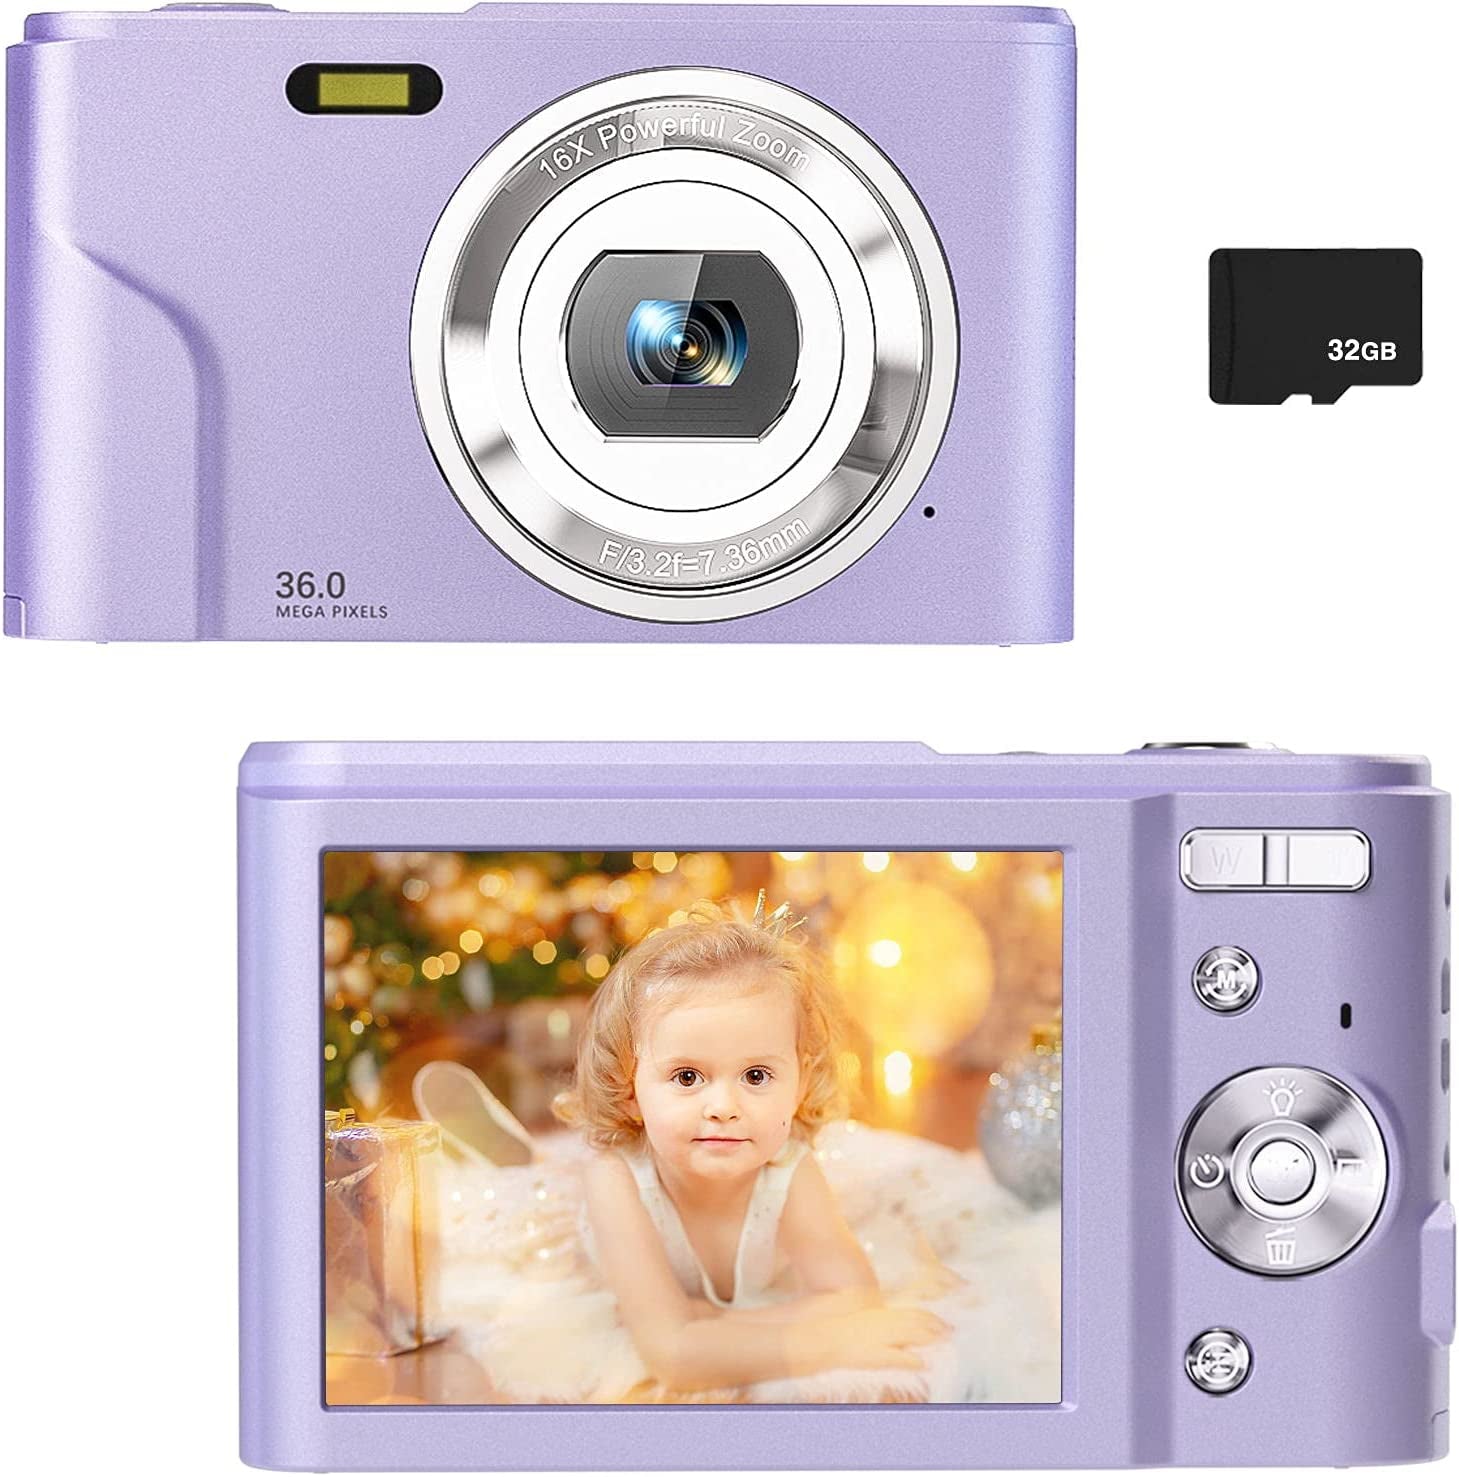 1080 P HD Digital Camera for Kids - Everyday-Sales.com